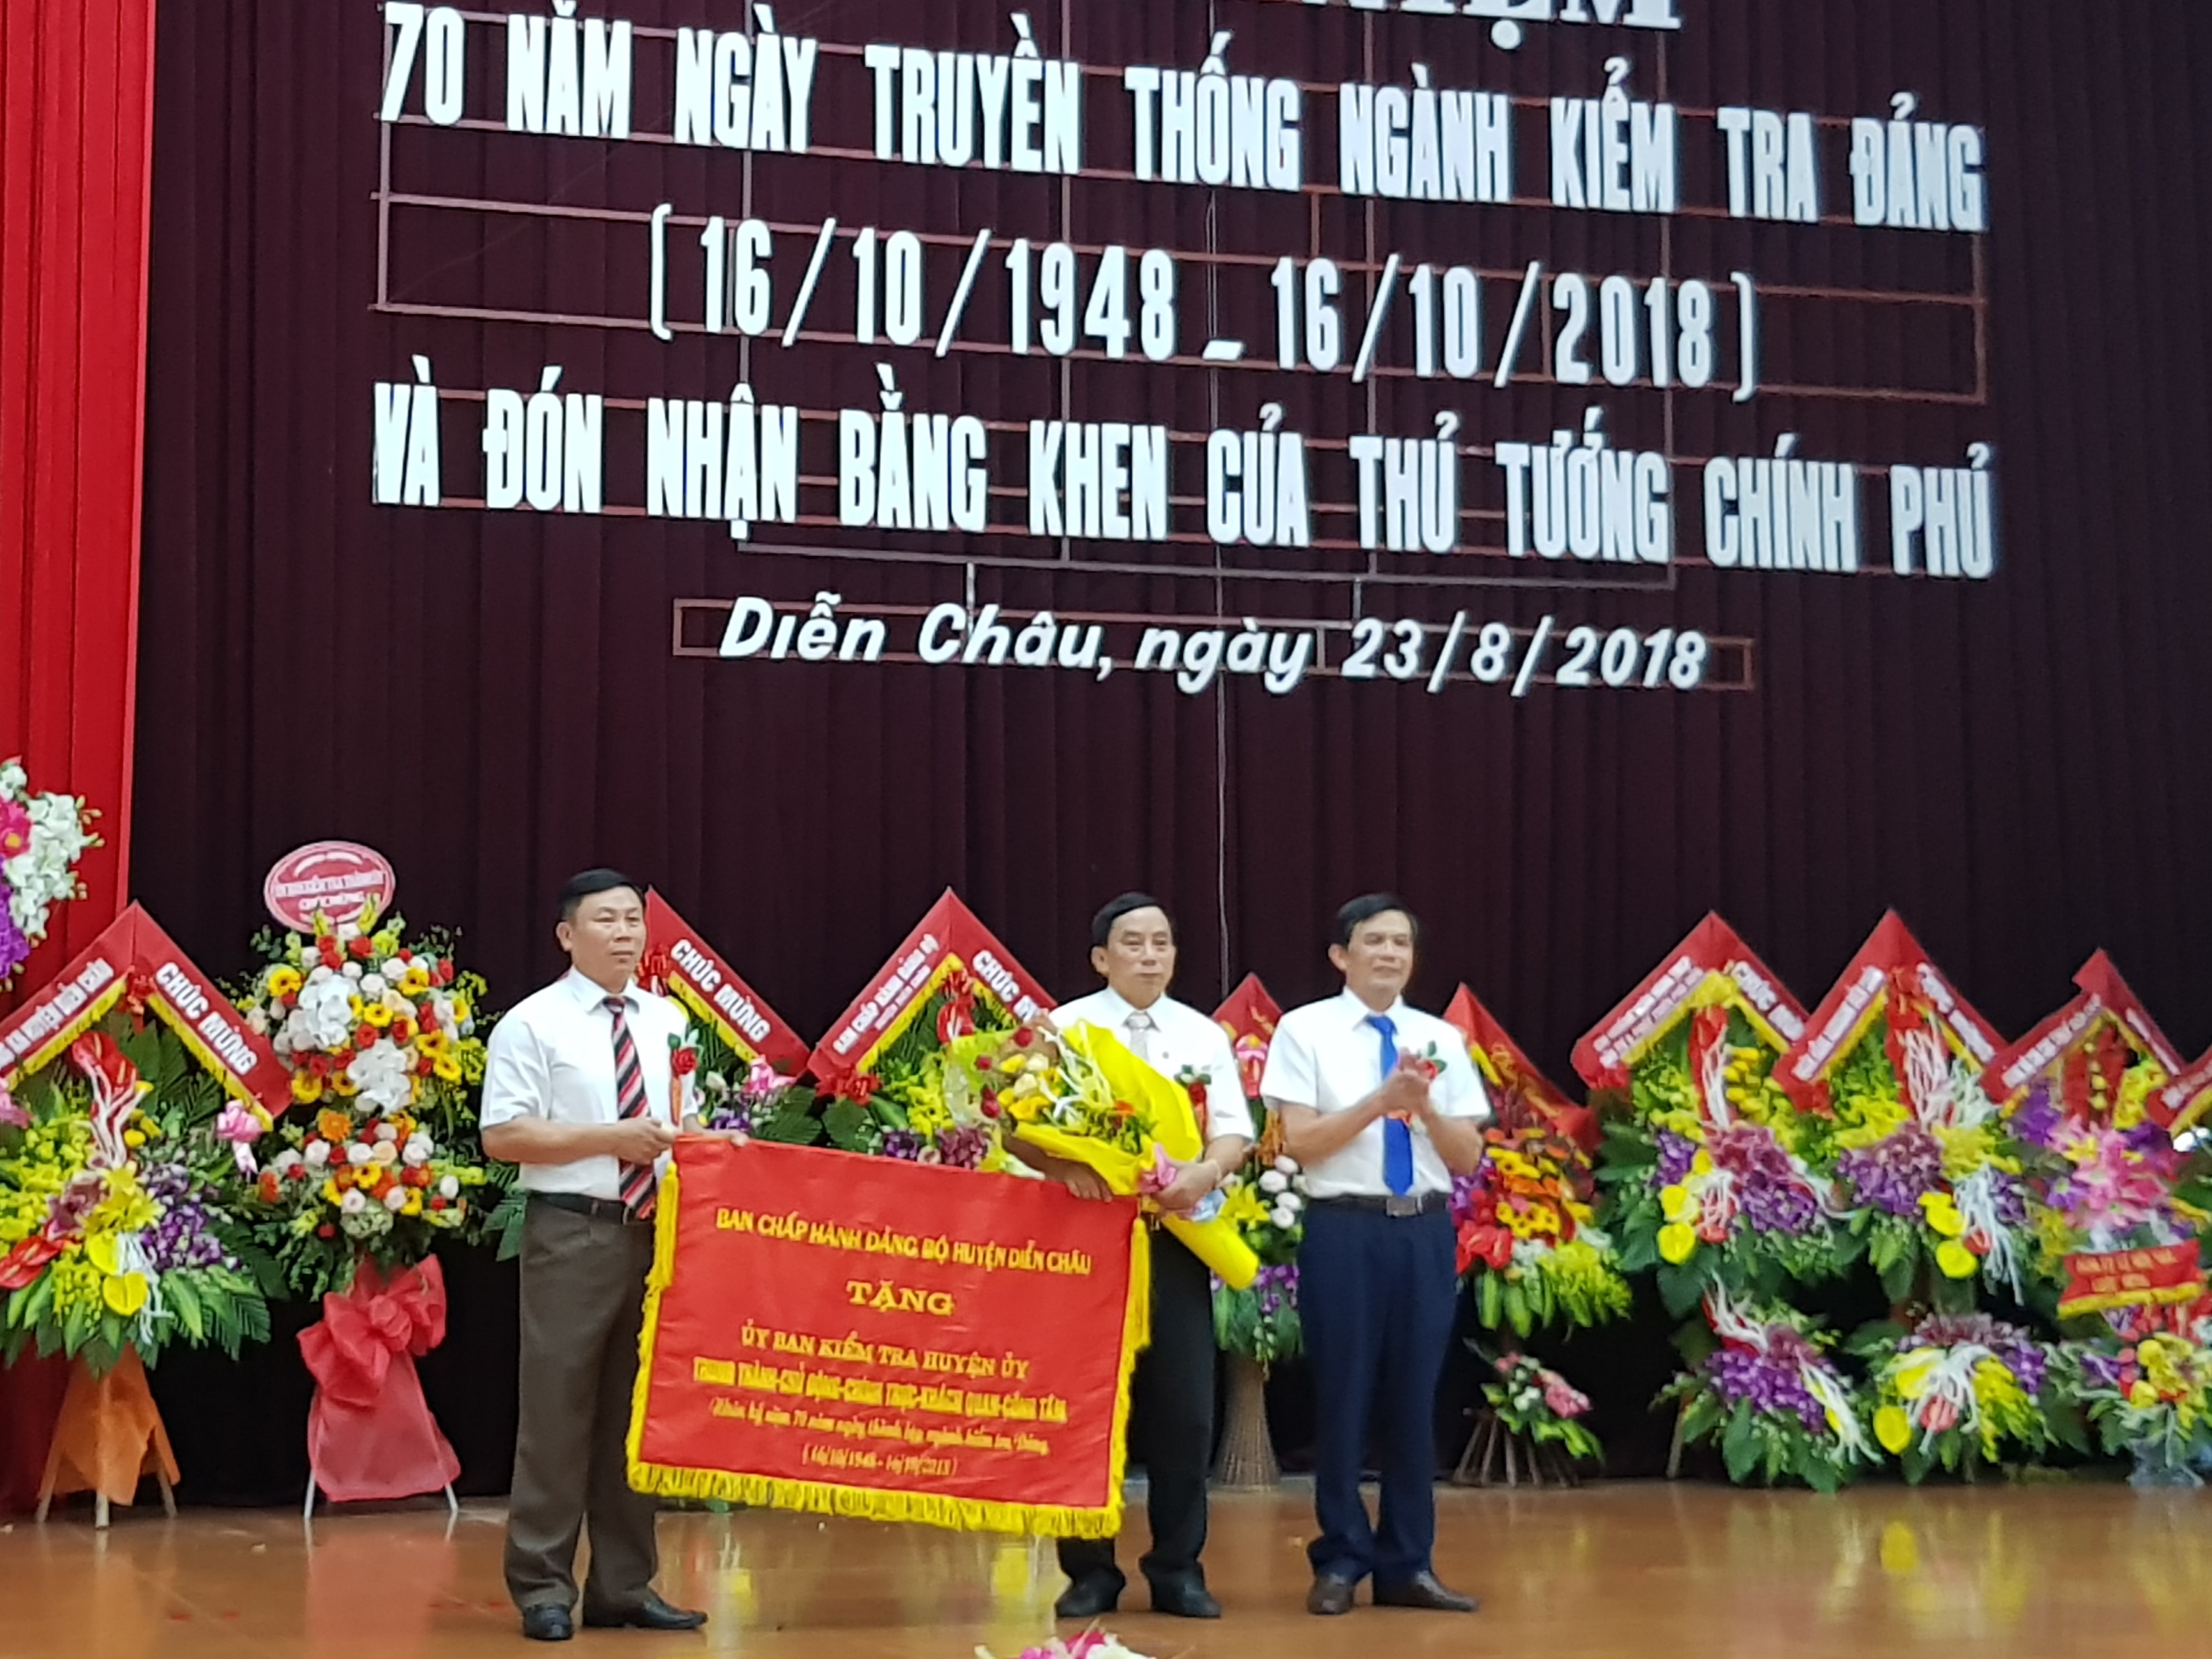 Đồng chí Trần Văn Cương – Bí thư Huyện ủy trao tặng bức trướng cho UBKT Huyện ủy Diễn Châu. Ảnh: Vân Anh